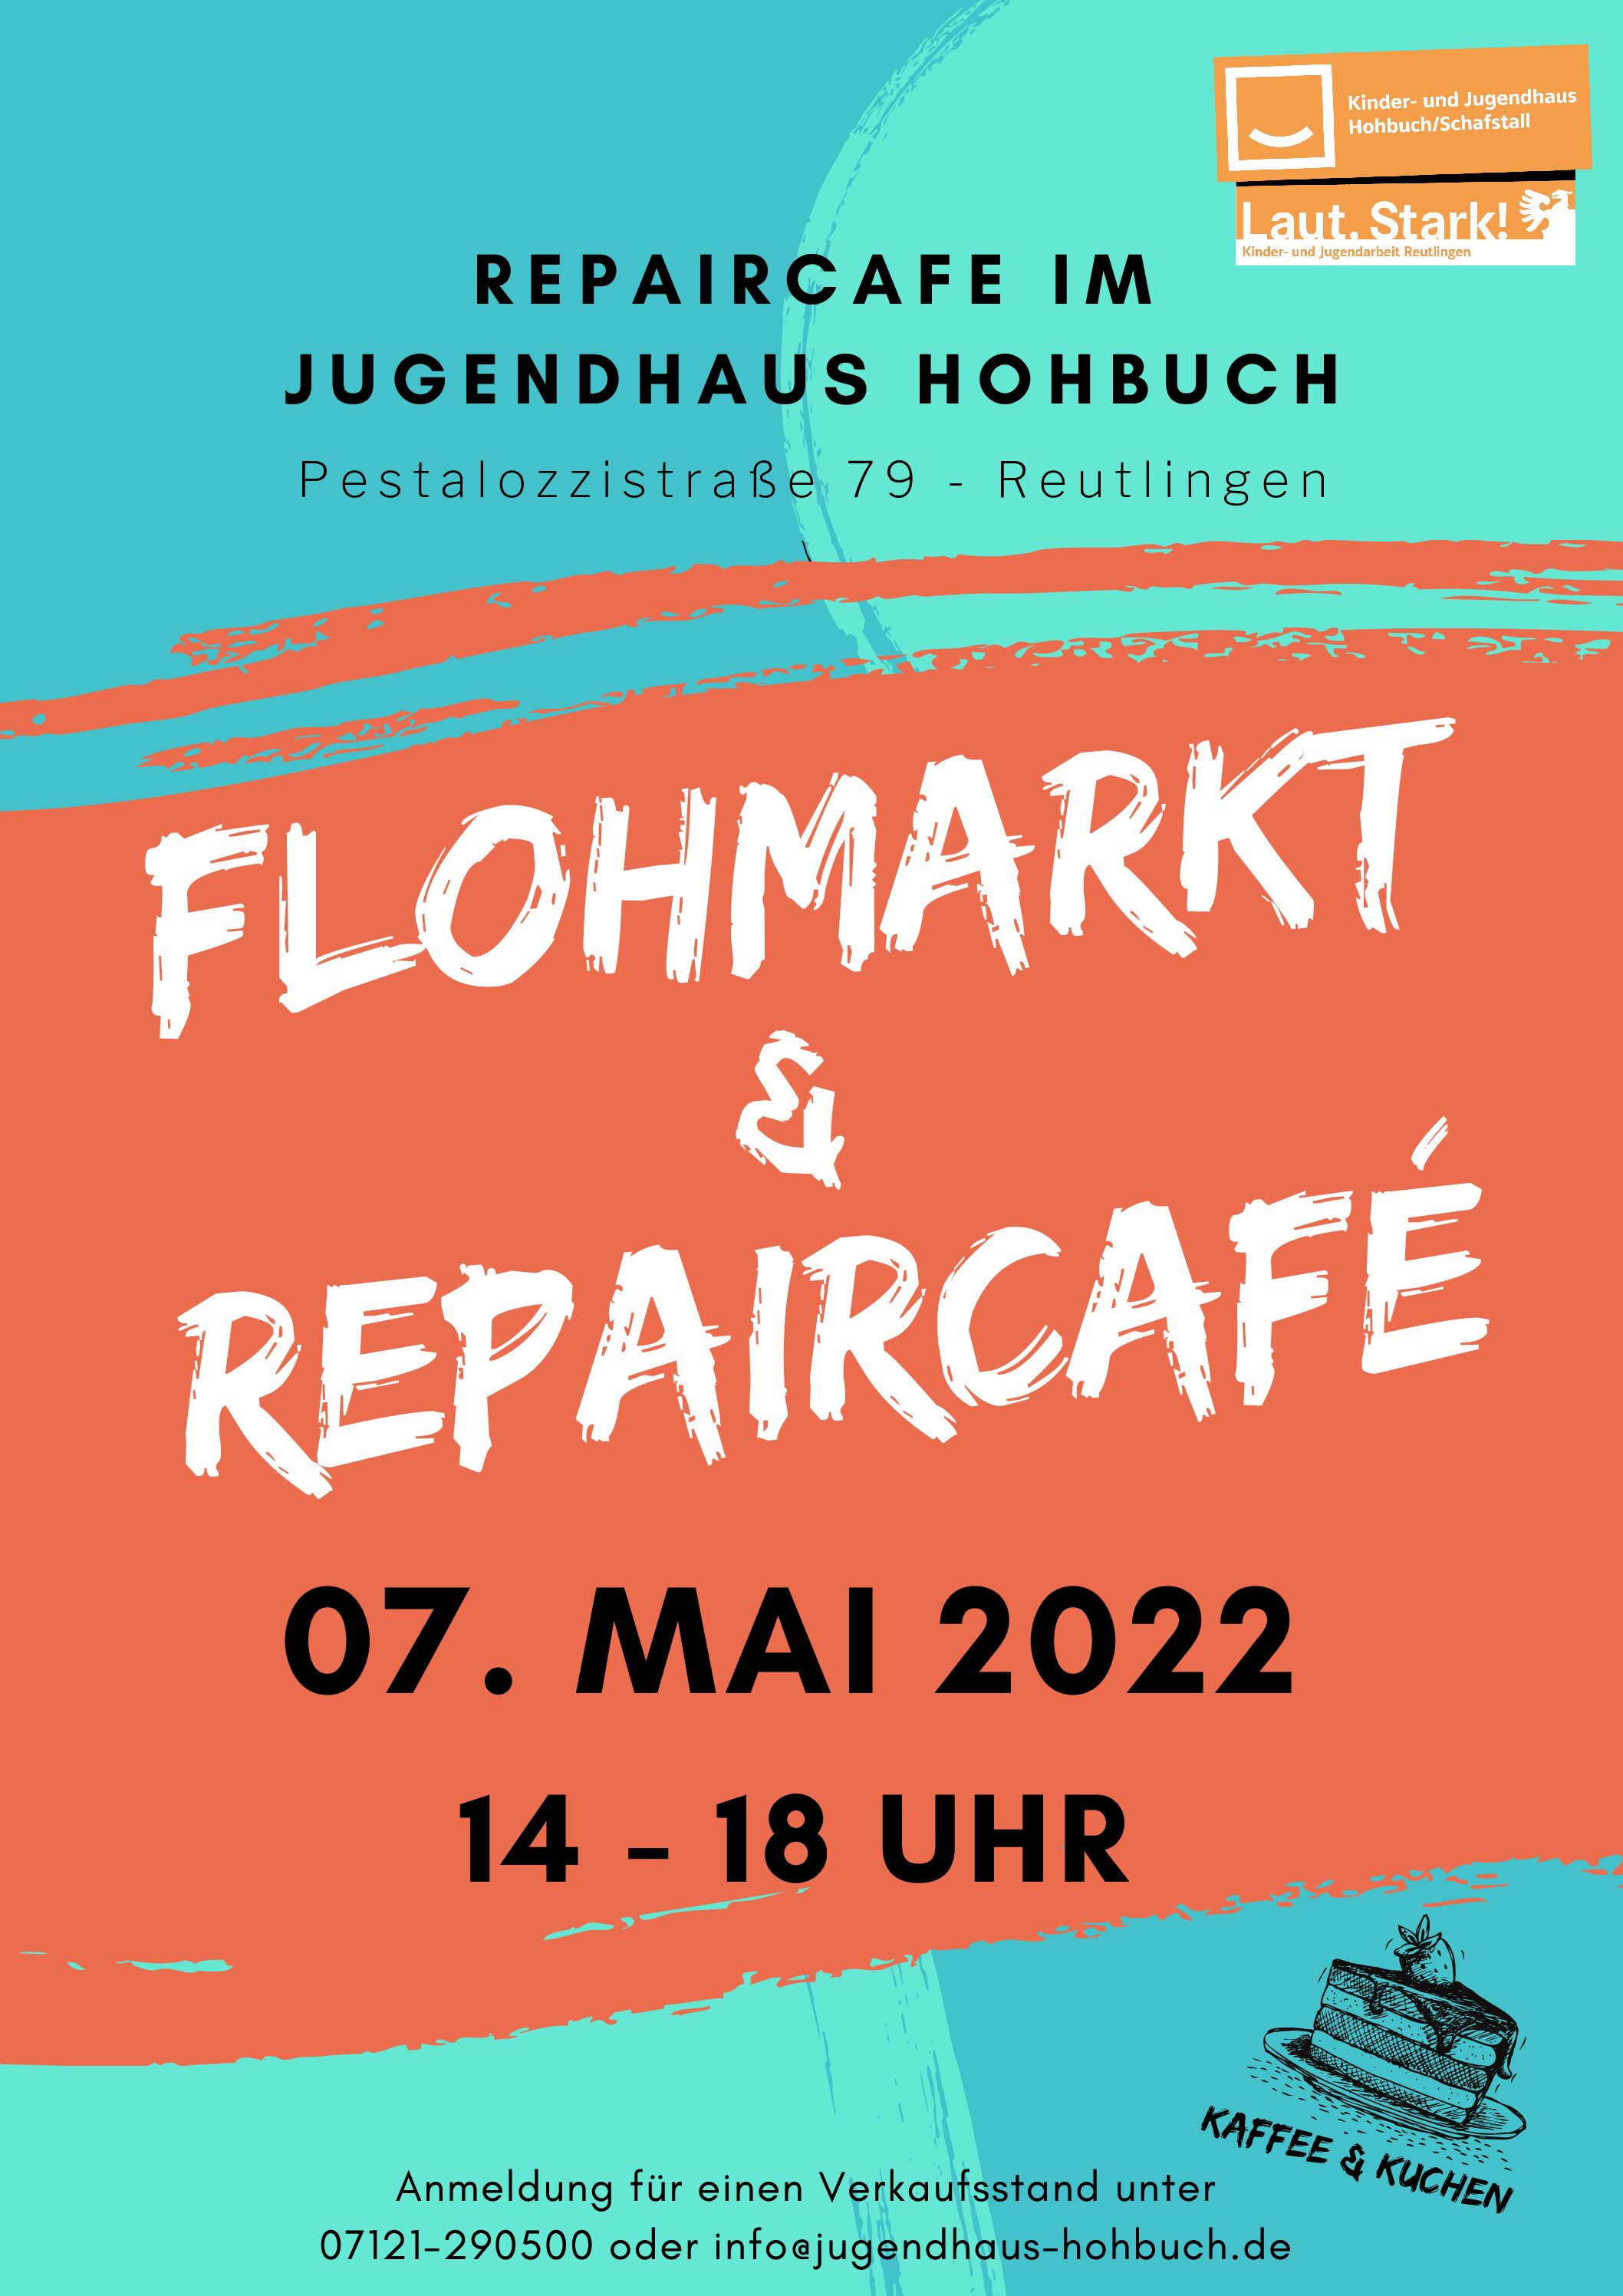 Repairmarkt: Flohmarkt und Repaircafé